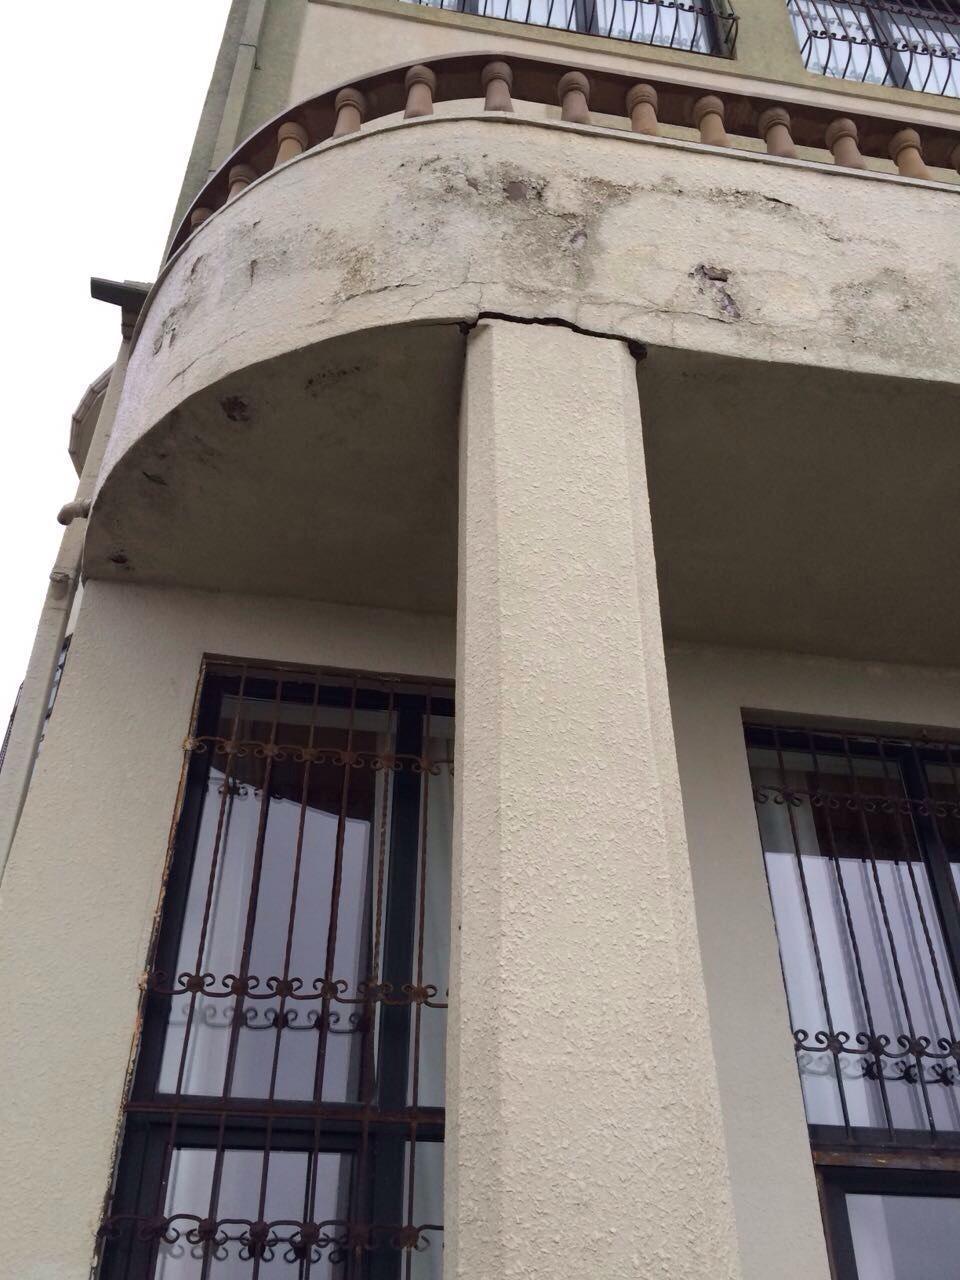 В 16-этажном доме в Баку образовались трещины